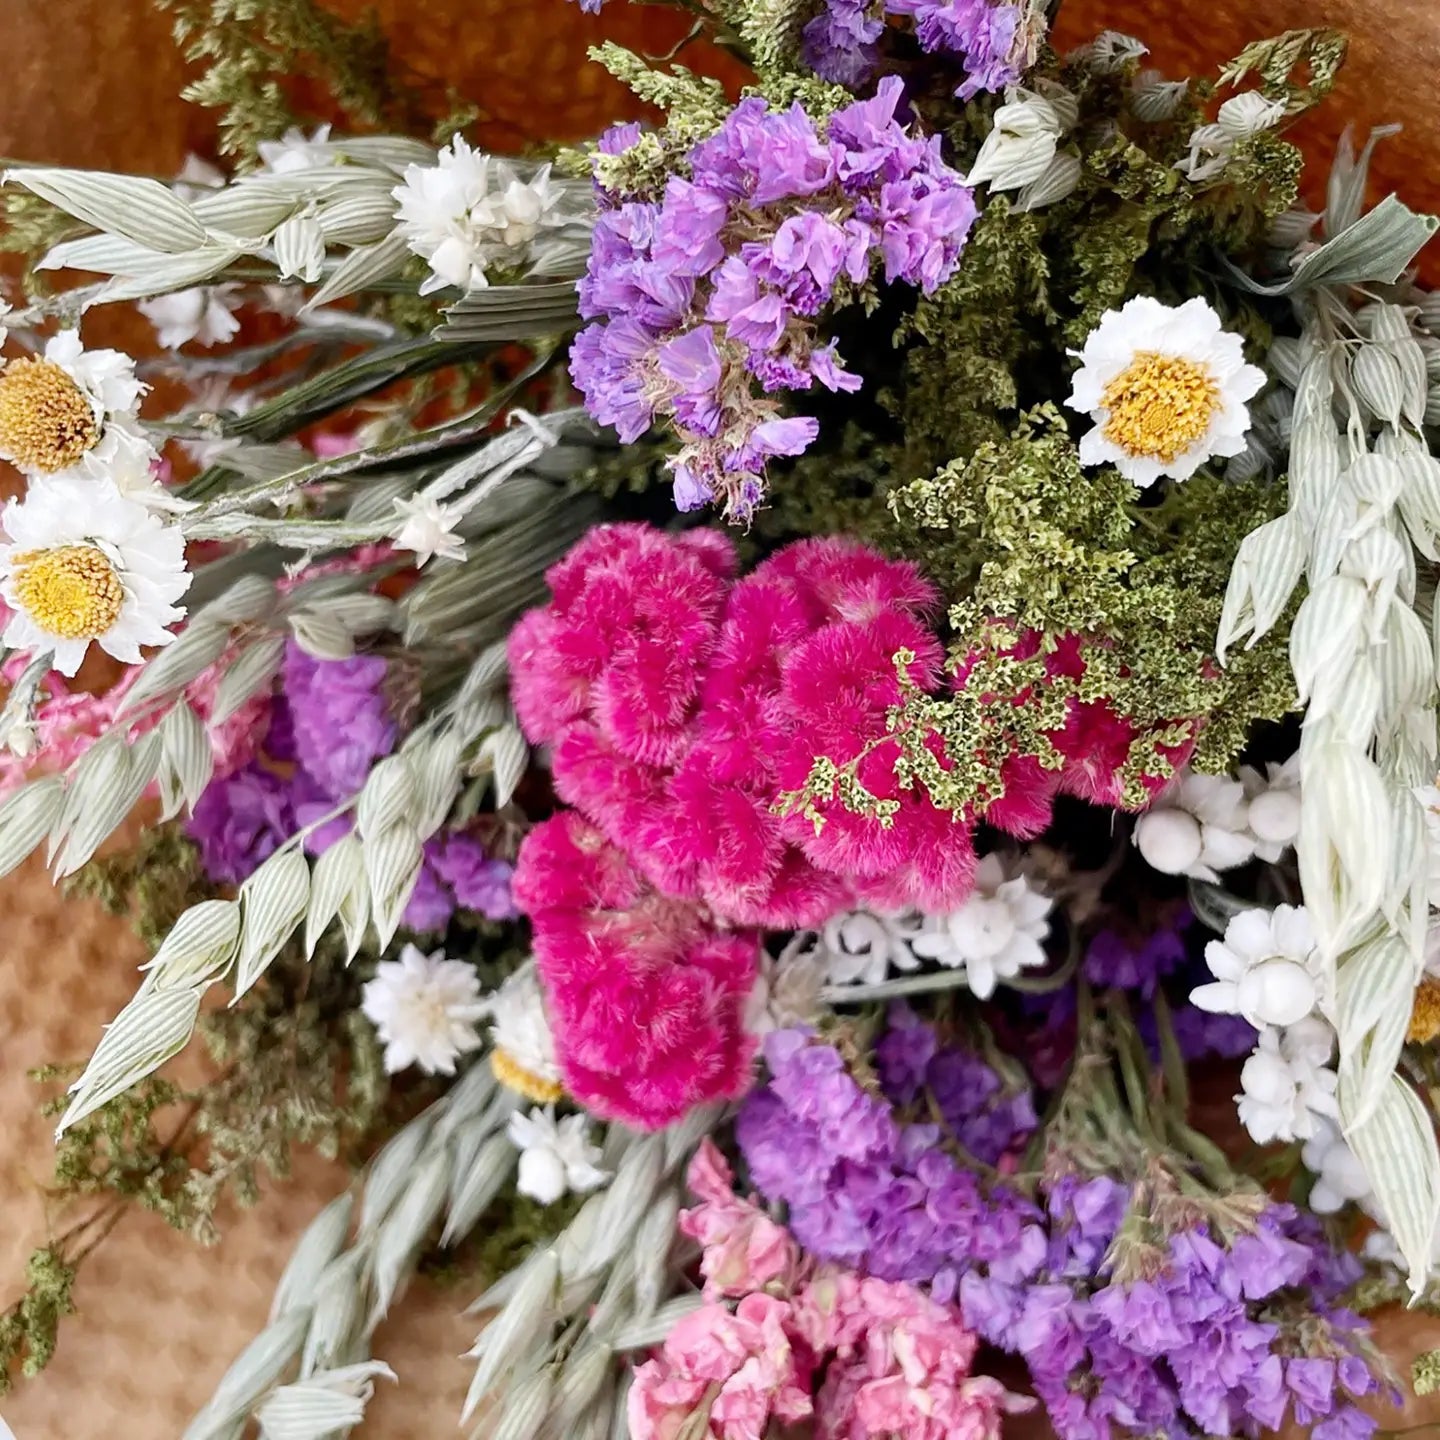 Wildflower & Grains Bouquet